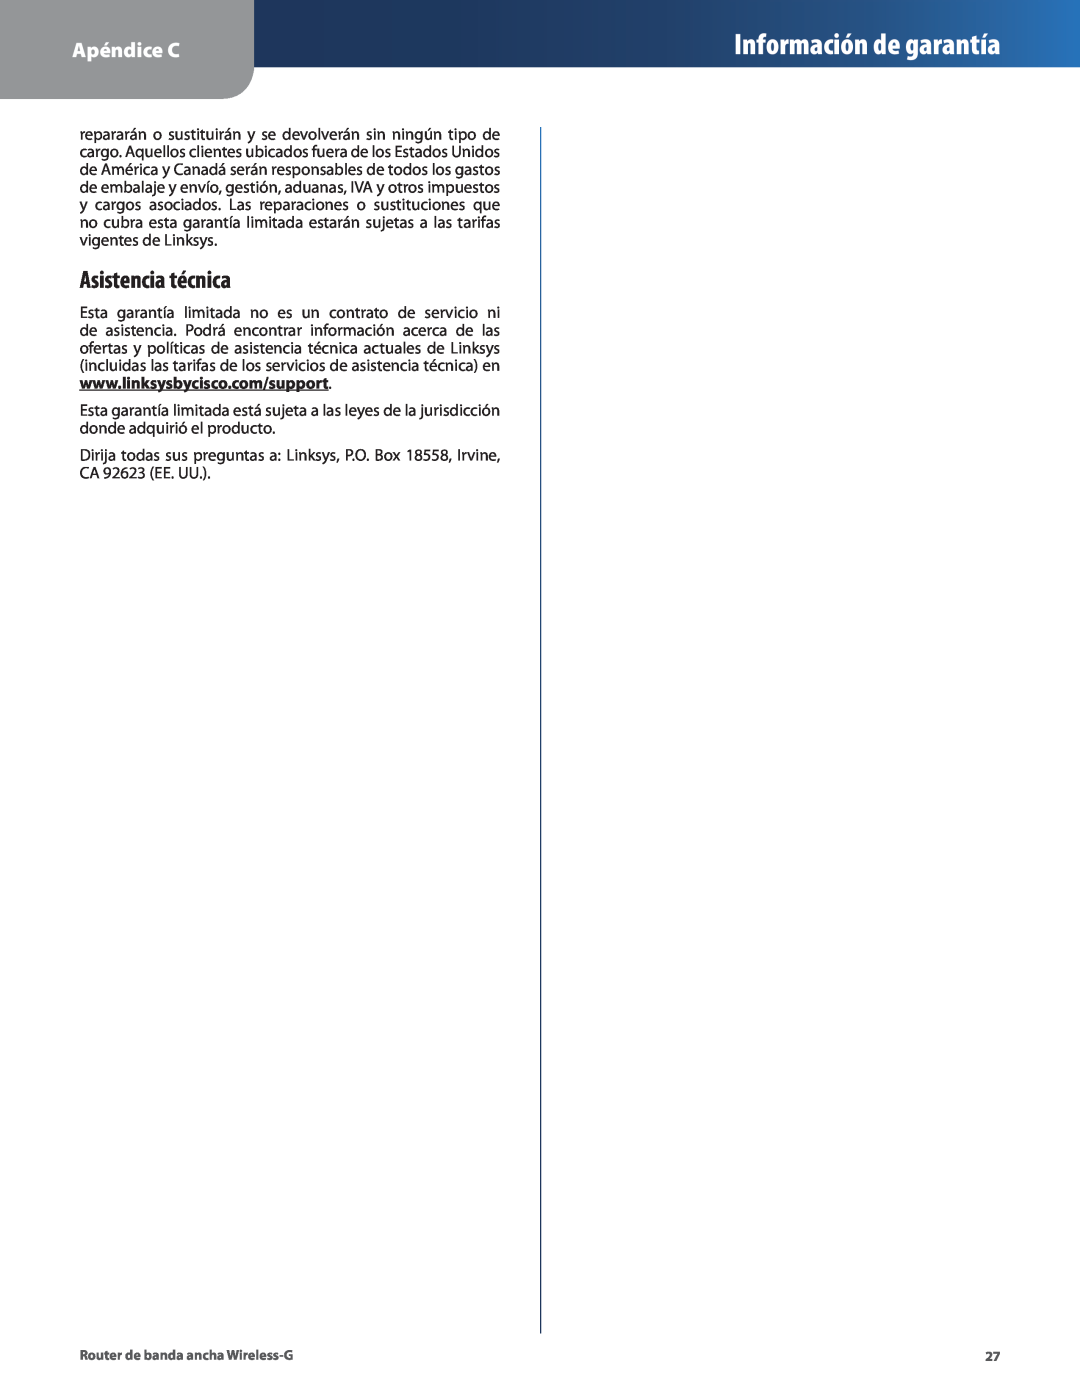 Cisco Systems WRT54G2 manual Asistencia técnica, Información de garantía, Apéndice C 